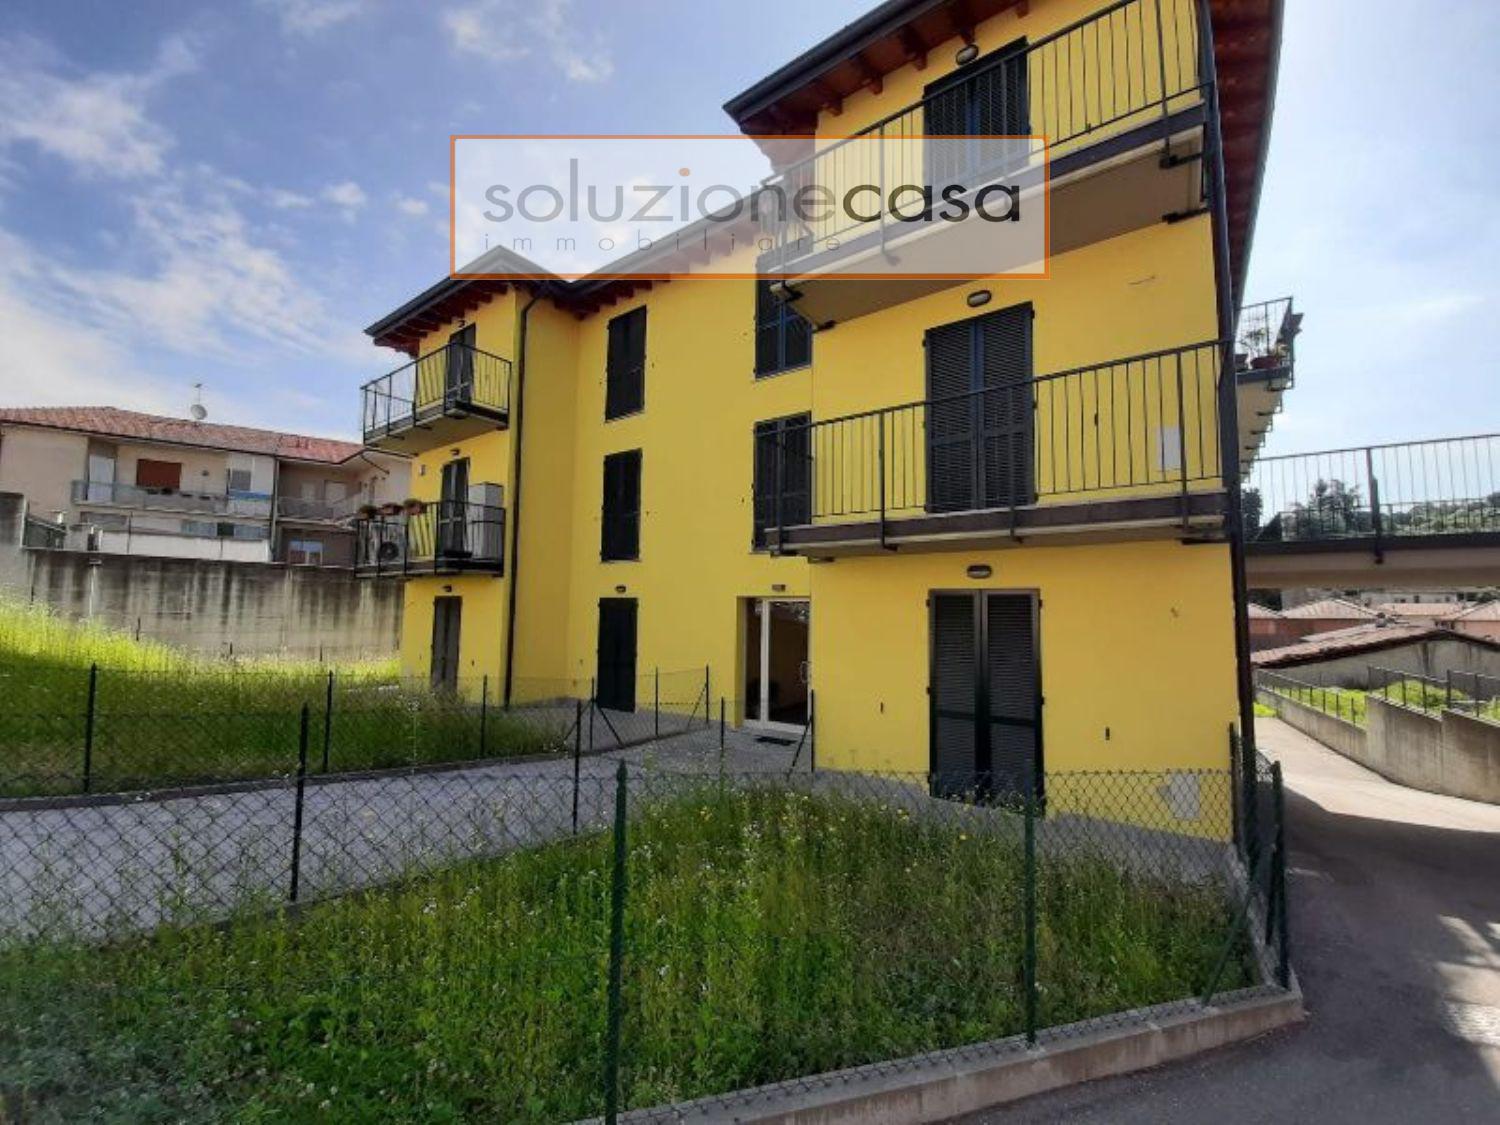 Appartamento in vendita a Mornago, 2 locali, prezzo € 78.000 | CambioCasa.it